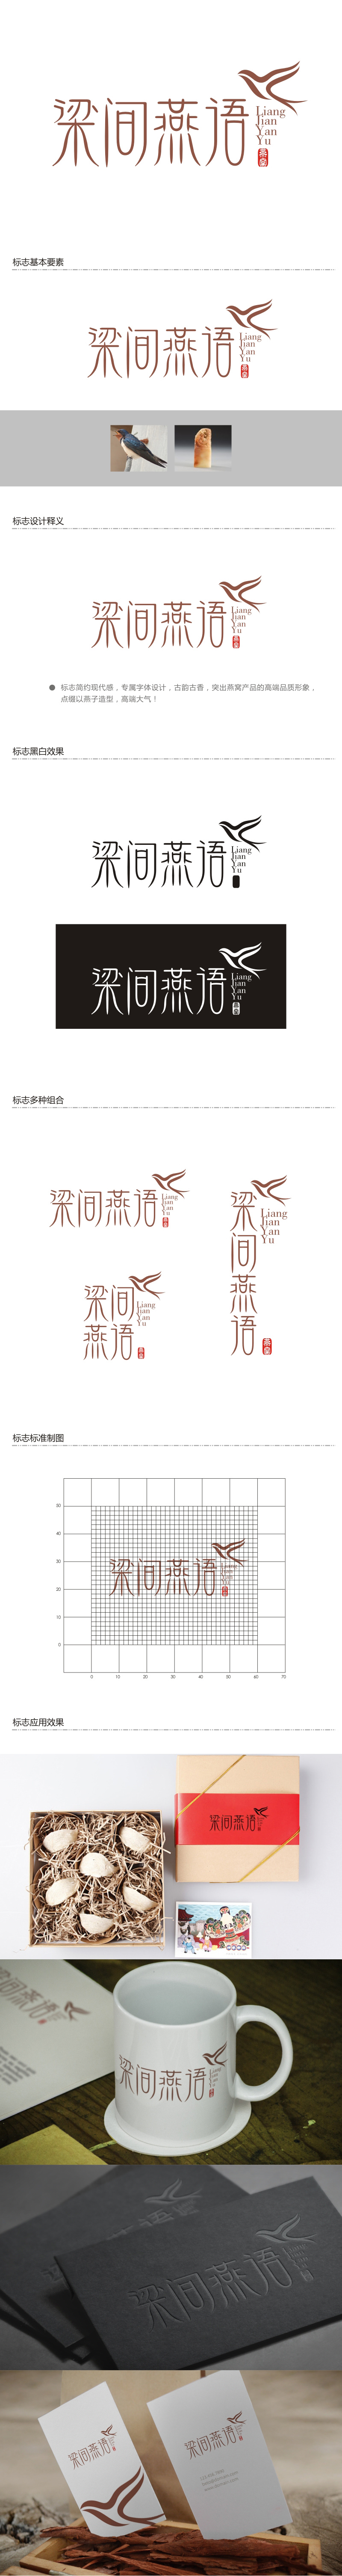 谭家强的梁间燕语食品销售logo设计